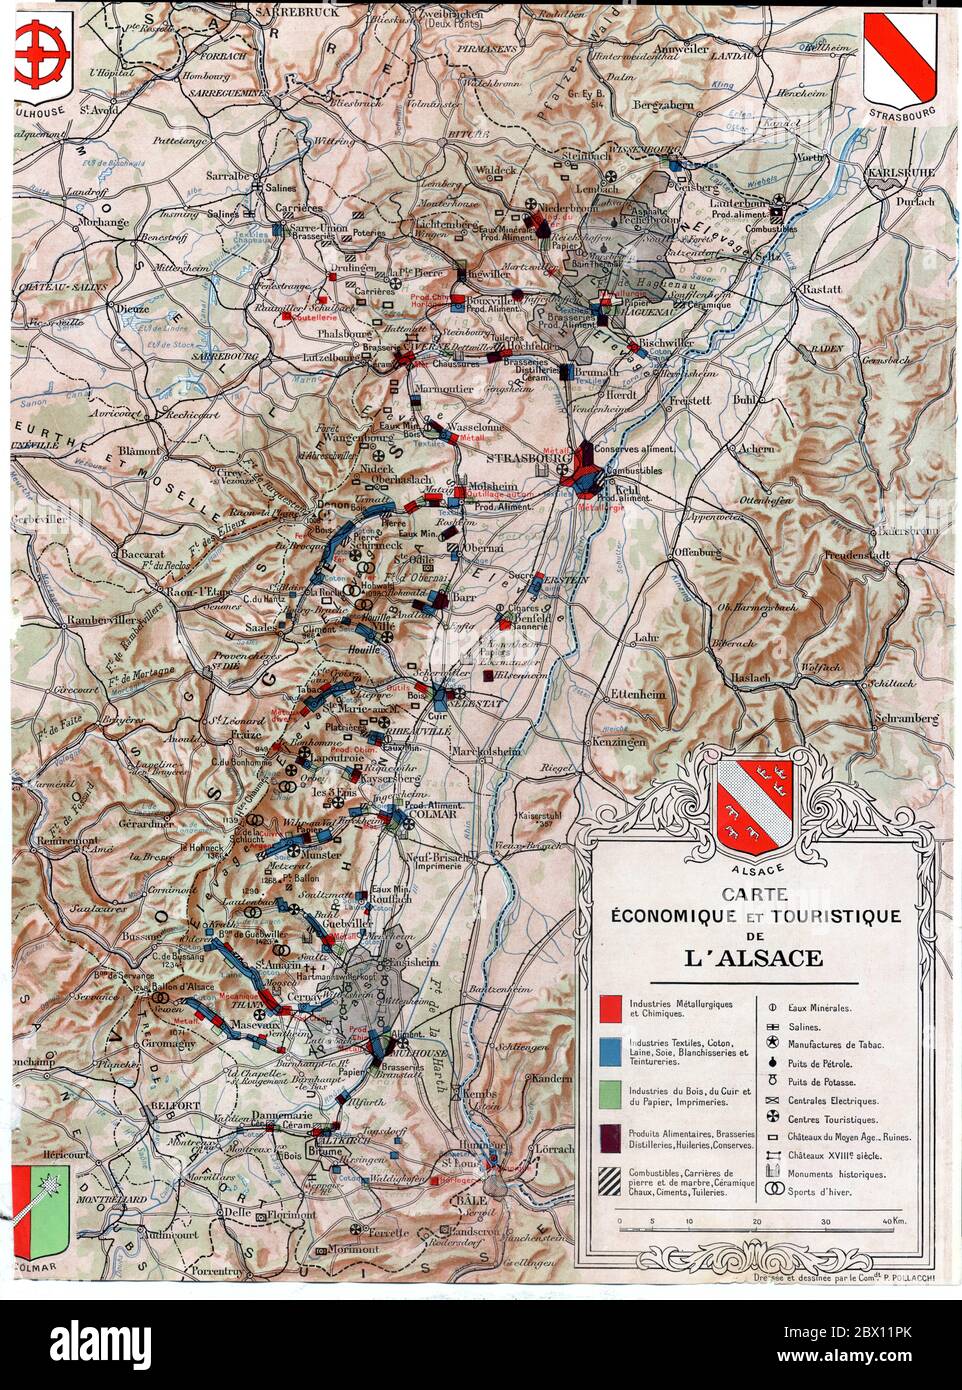 Carte économique et touristique de l'Alsace. 1936 Stock Photo